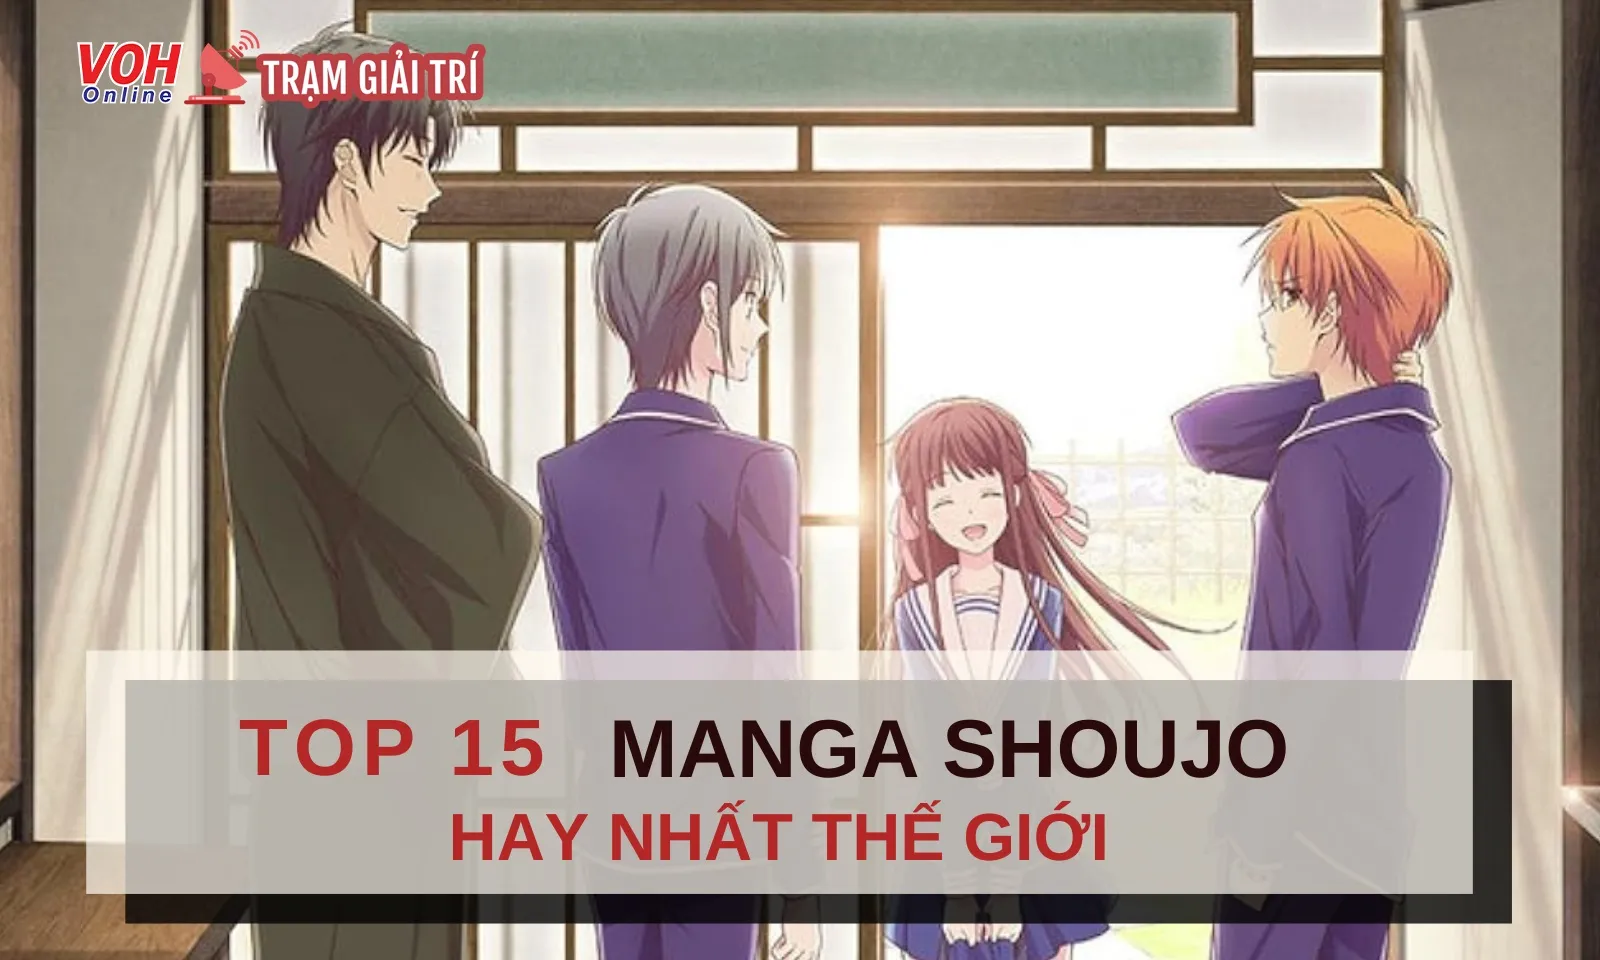 Top 15 manga shoujo hay nhất thế giới